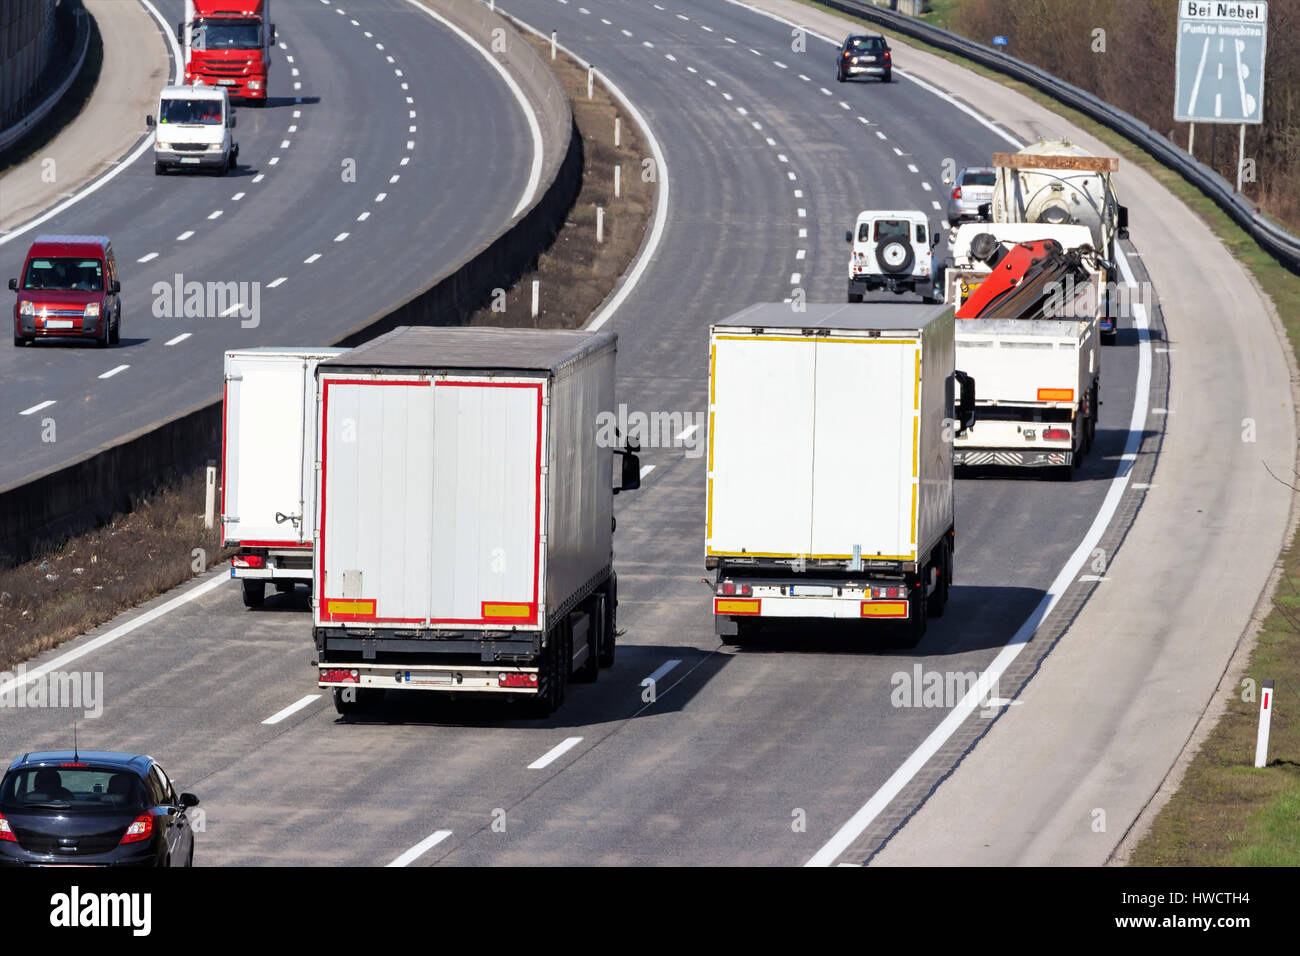 Trucks on the highway. Transport on the street for goods., Lastwagen auf der Autobahn. Transport auf der Straße für Güter. Stock Photo